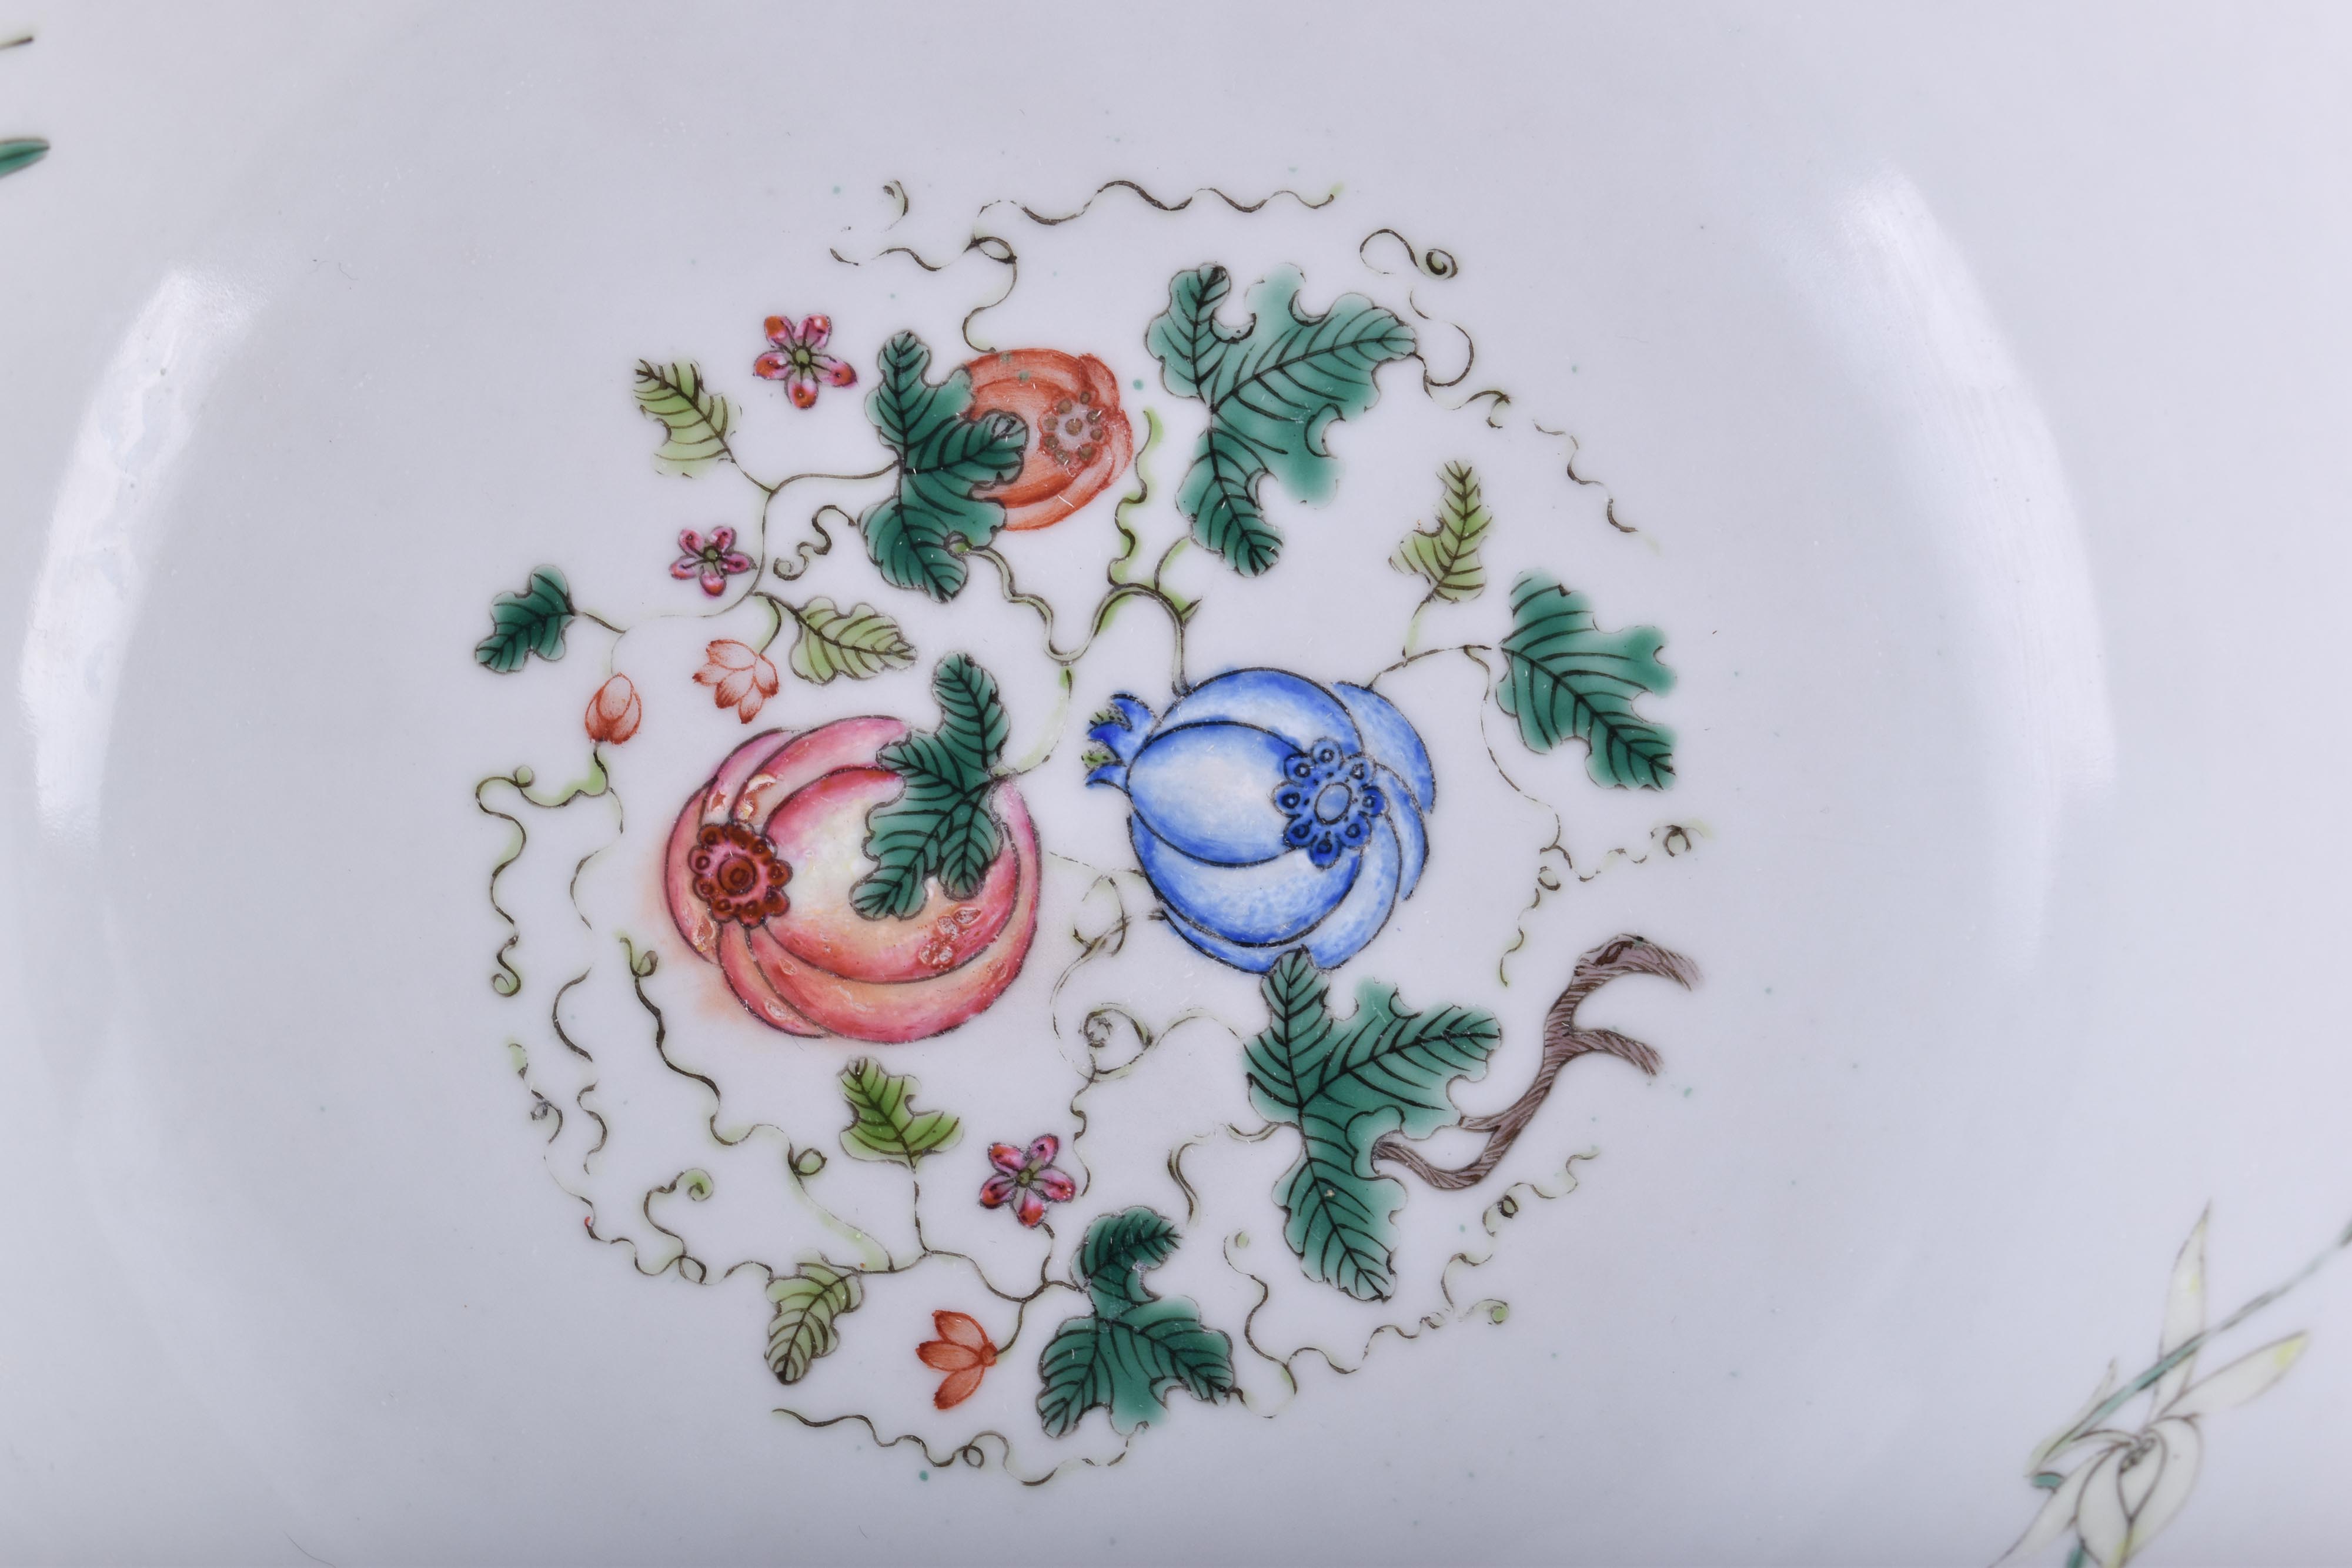  Pair of bowls China Qing dynasty - Image 7 of 12